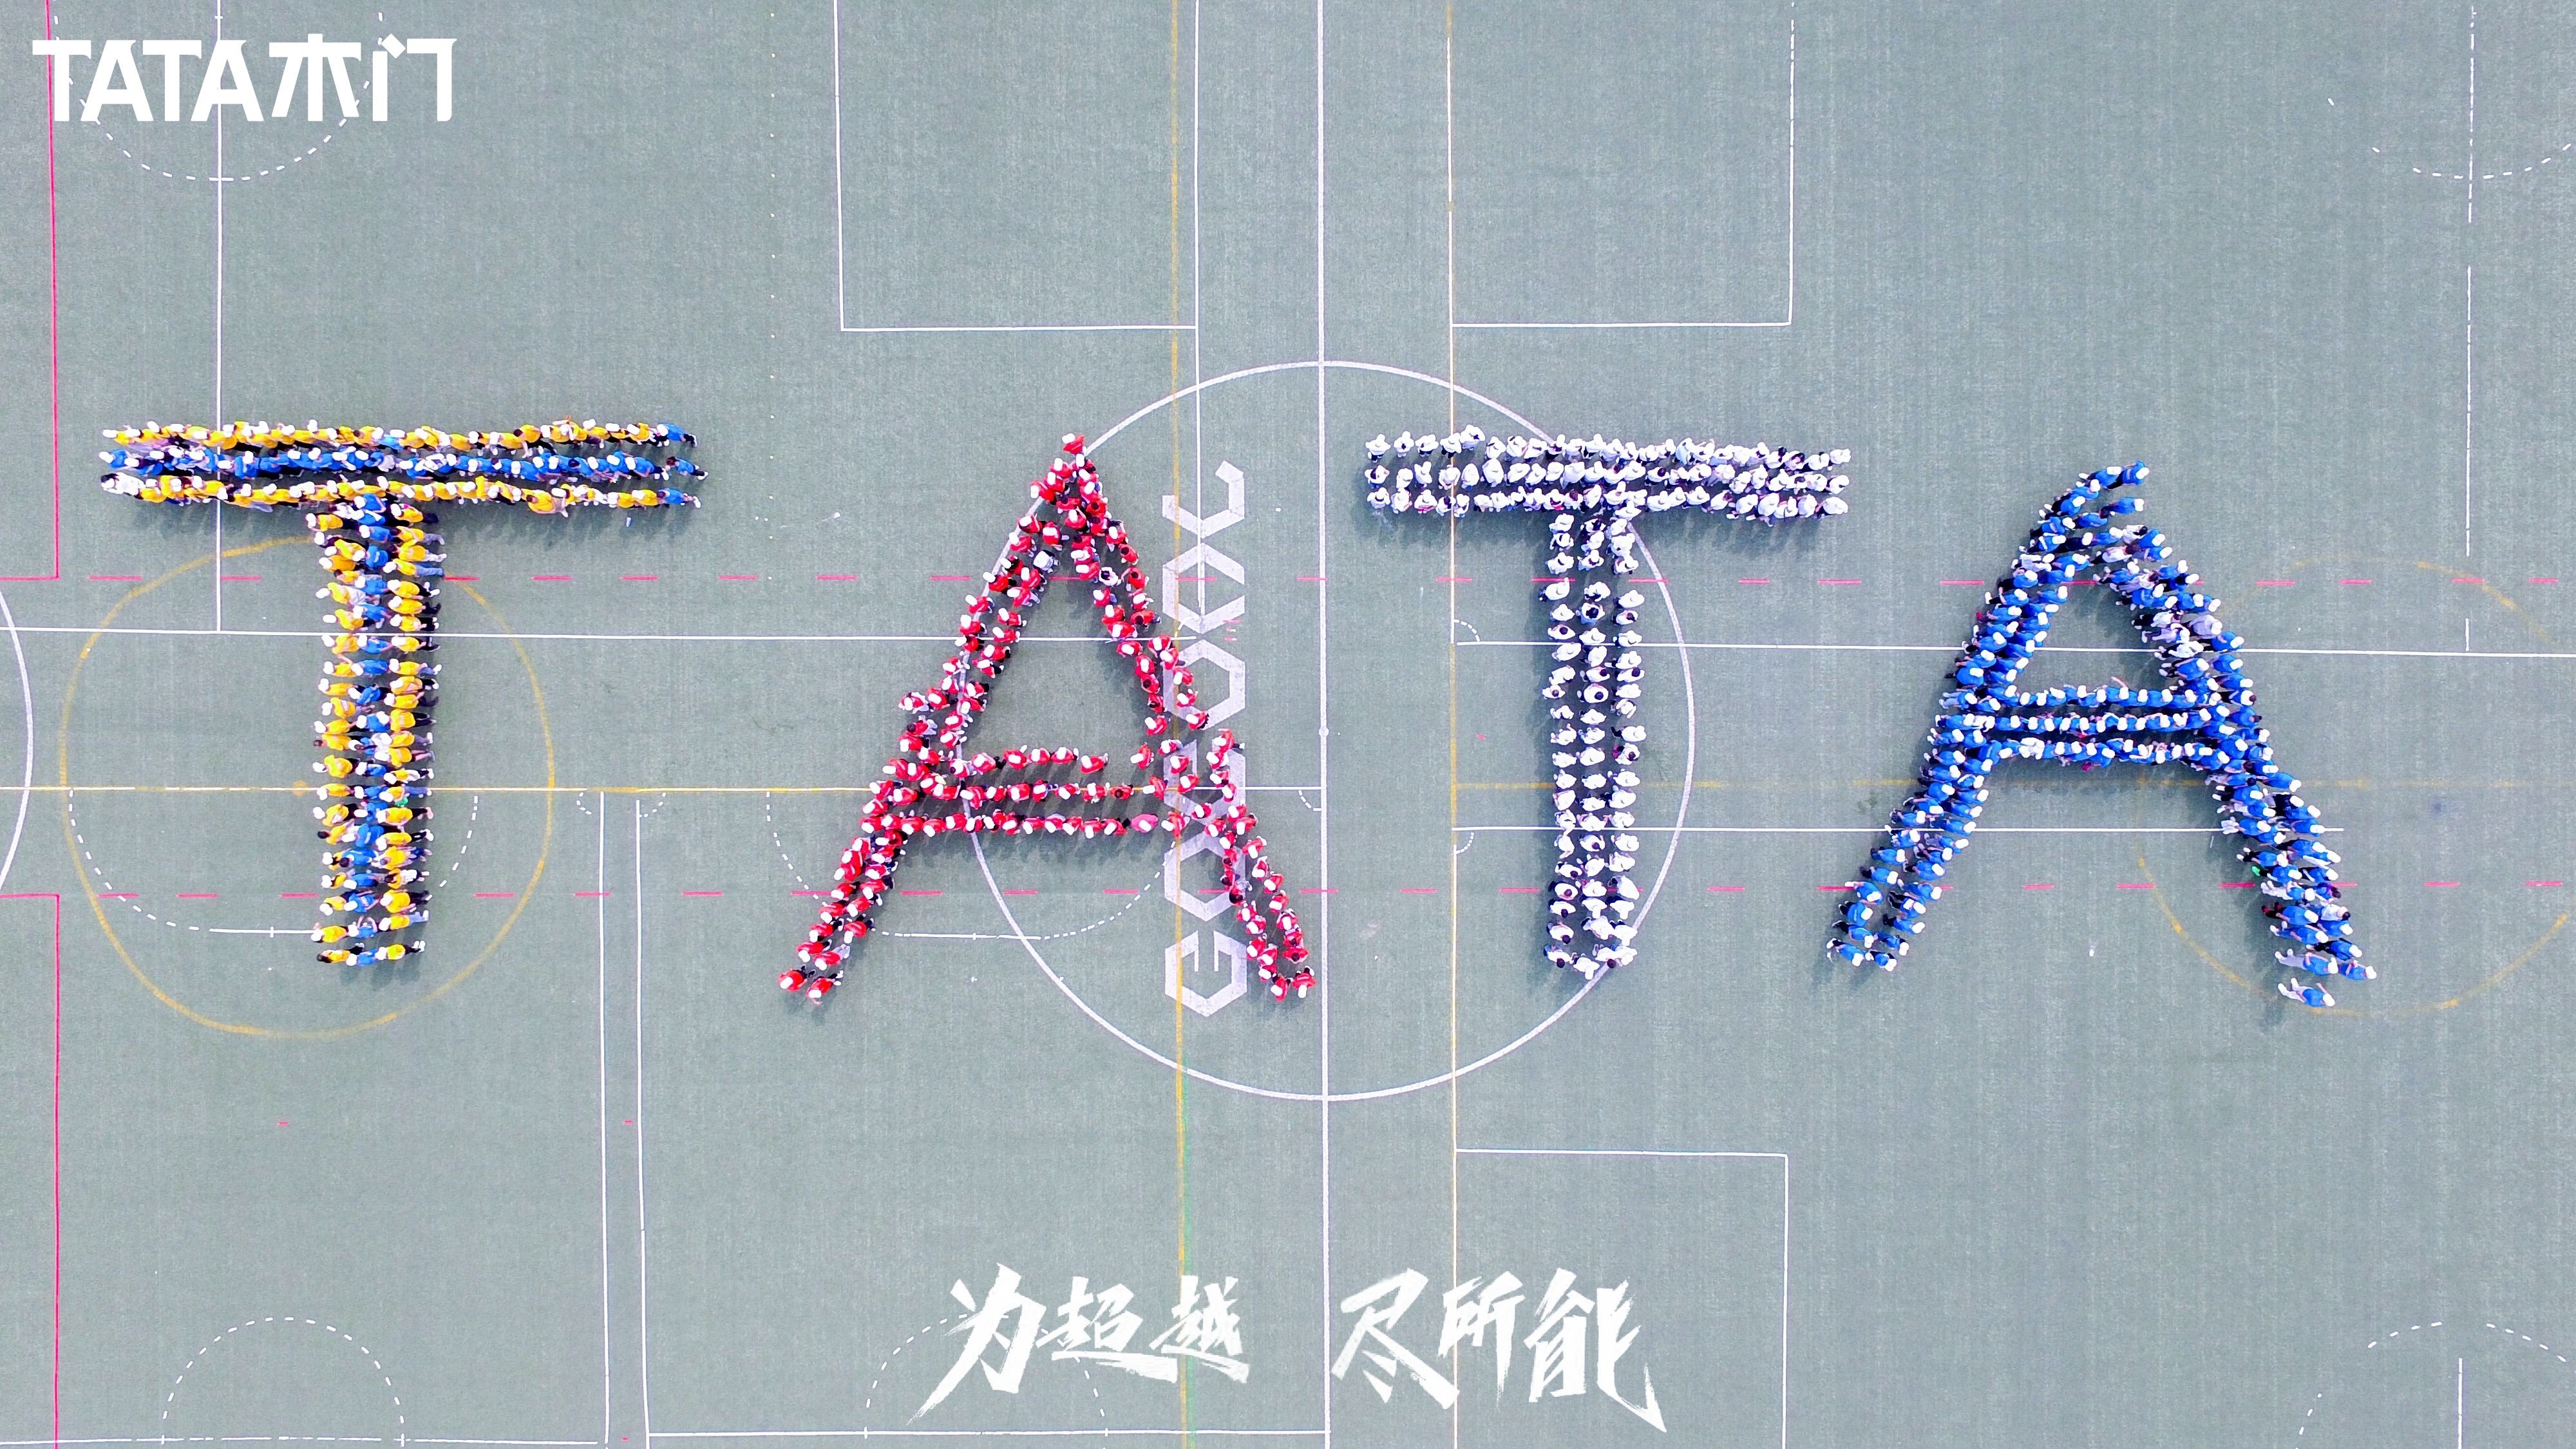 作为众所周知的“乒乓强国”，中国队不负众望，囊括了2023年德班世乒赛的全部五项冠军。同为佼佼者，TATA木门作为官方赞助商，再一次向世界展示了中国制造的品牌实...